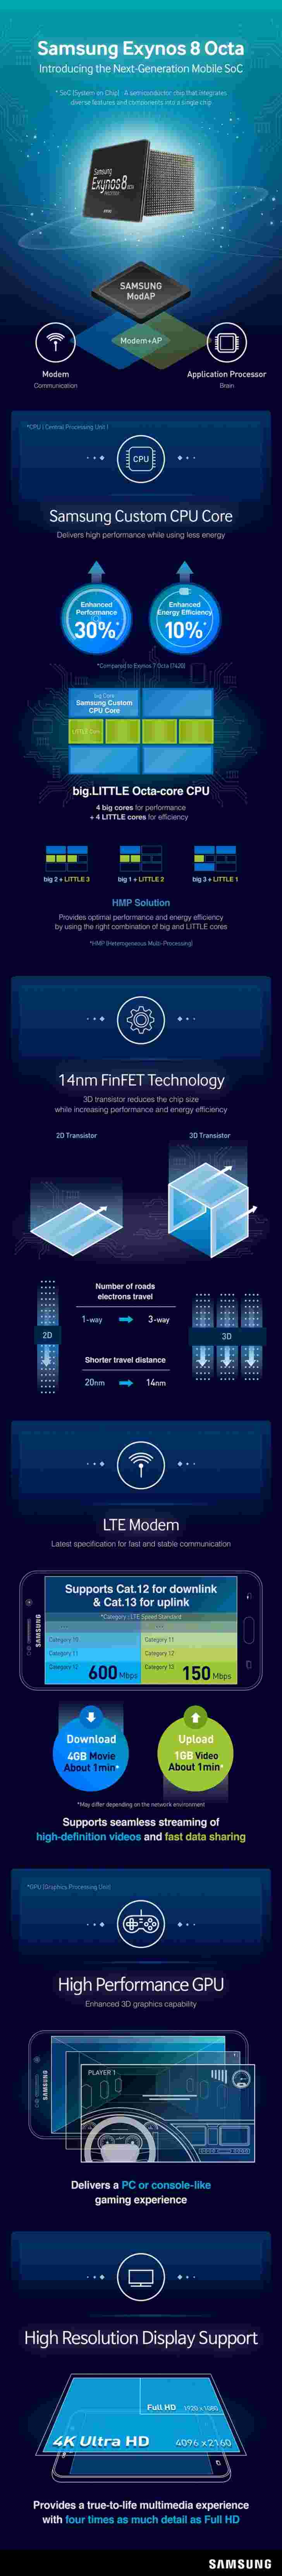 信息图表详细信息Samsung Exynos 8890芯片组将在Galaxy S7中